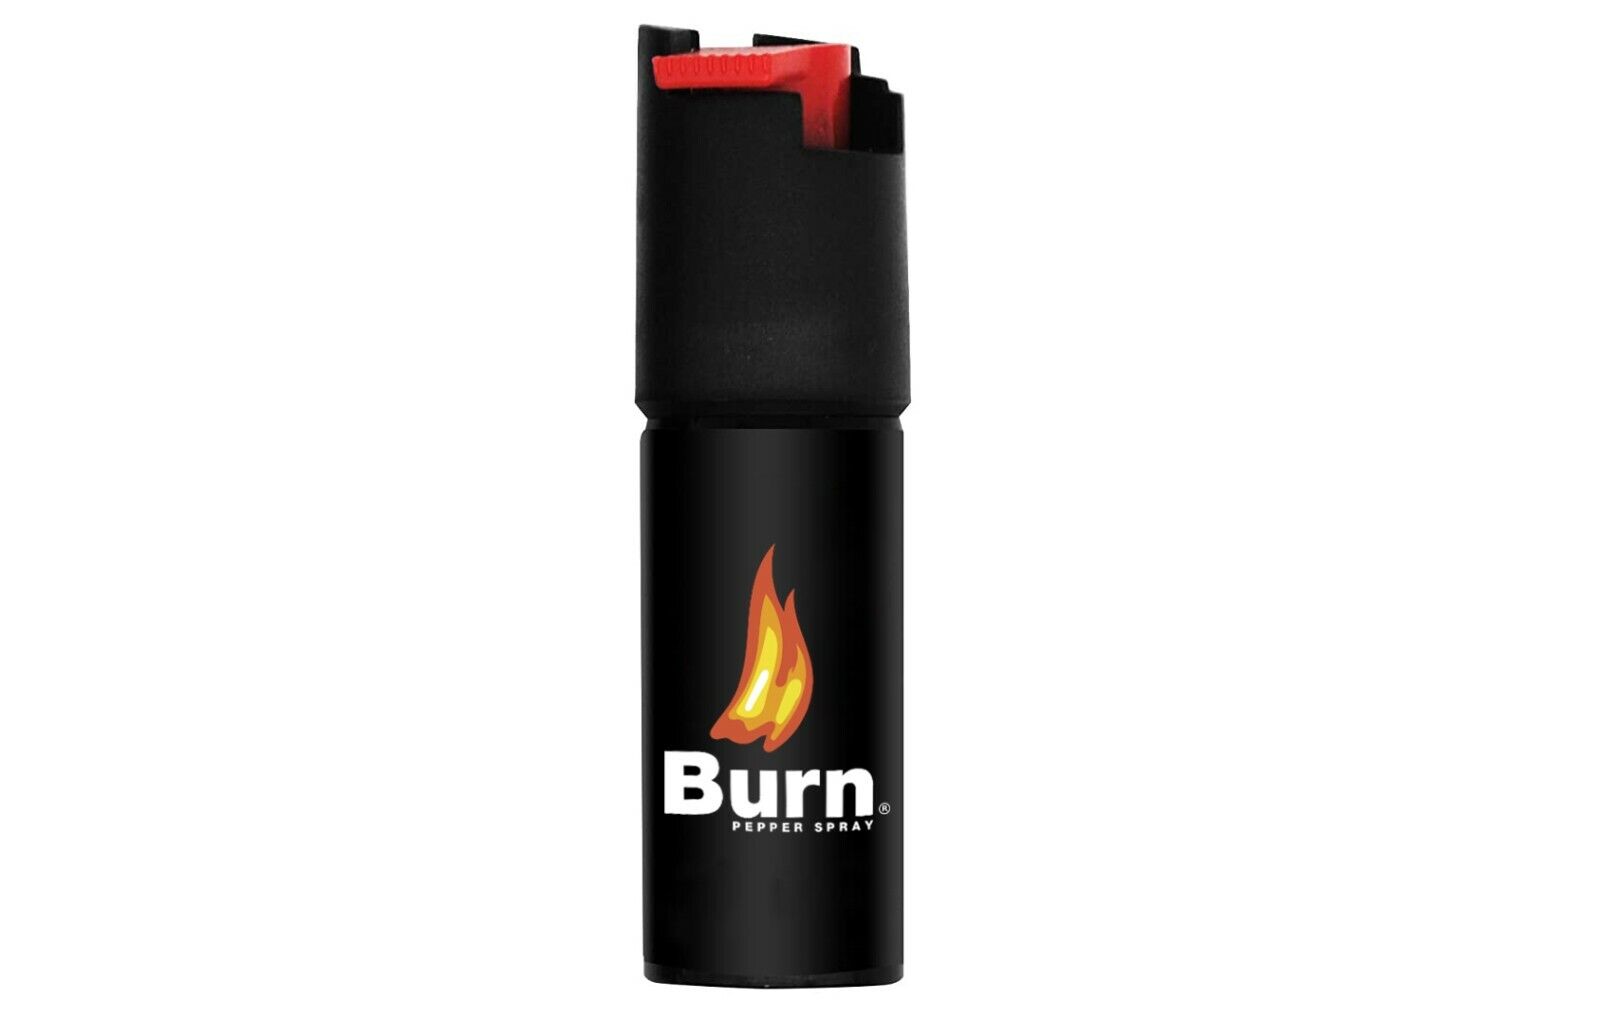 BURN Pepper Spray .50oz Keychain Self Defense Security Case Molded Red - 2 PACK  Burn - фотография #5